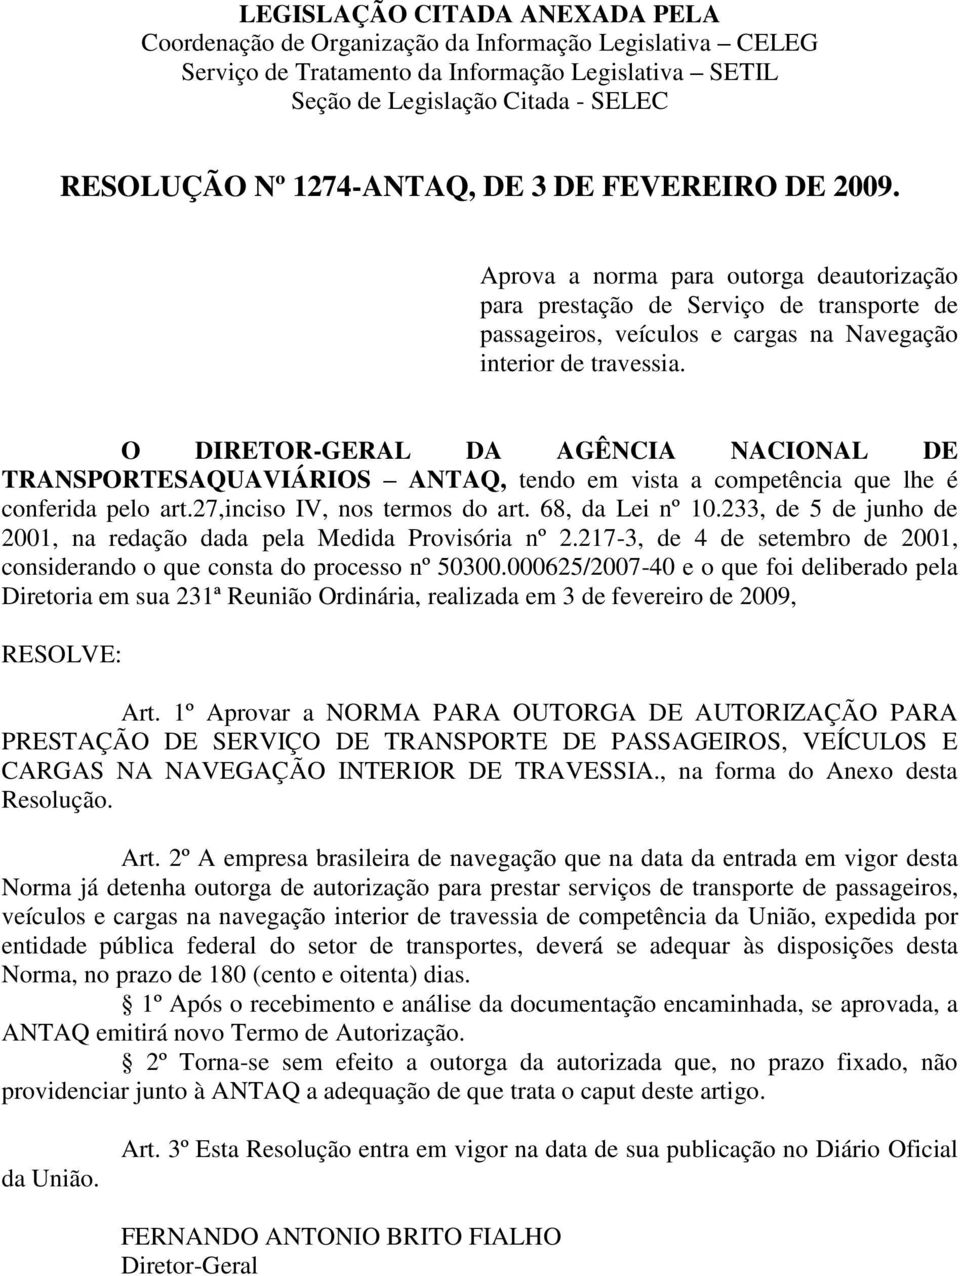 O DIRETOR-GERAL DA AGÊNCIA NACIONAL DE TRANSPORTESAQUAVIÁRIOS ANTAQ, tendo em vista a competência que lhe é conferida pelo art.27,inciso IV, nos termos do art. 68, da Lei nº 10.